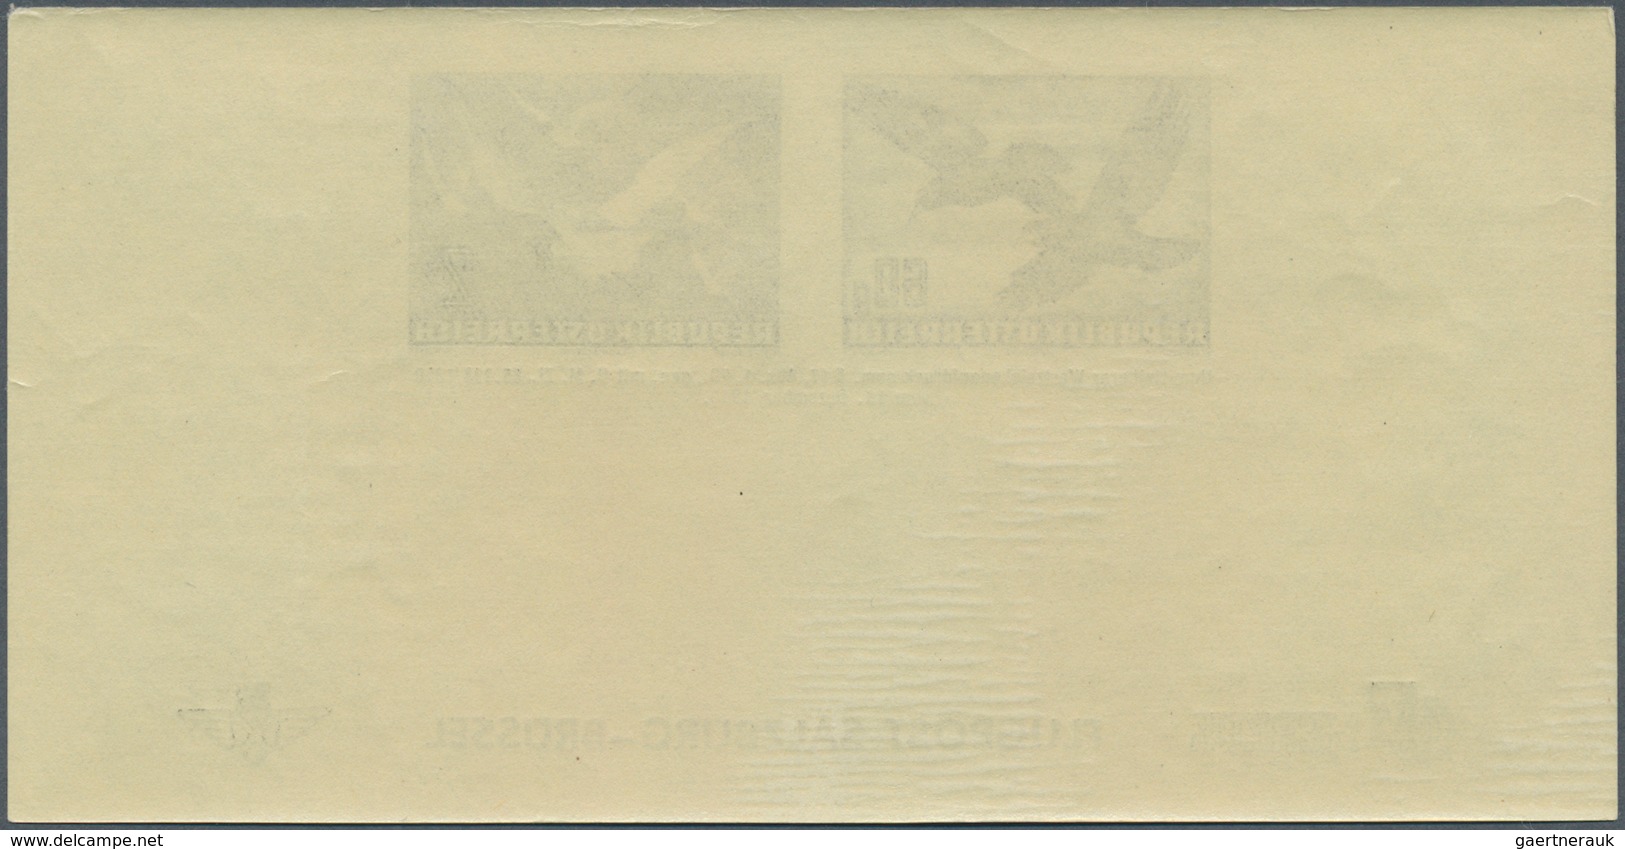 15434 Österreich: 1949, 40 g. bis 1 S. UPU als Adresszettel, je einmal auf x- und y-Papier postfrisch, ein